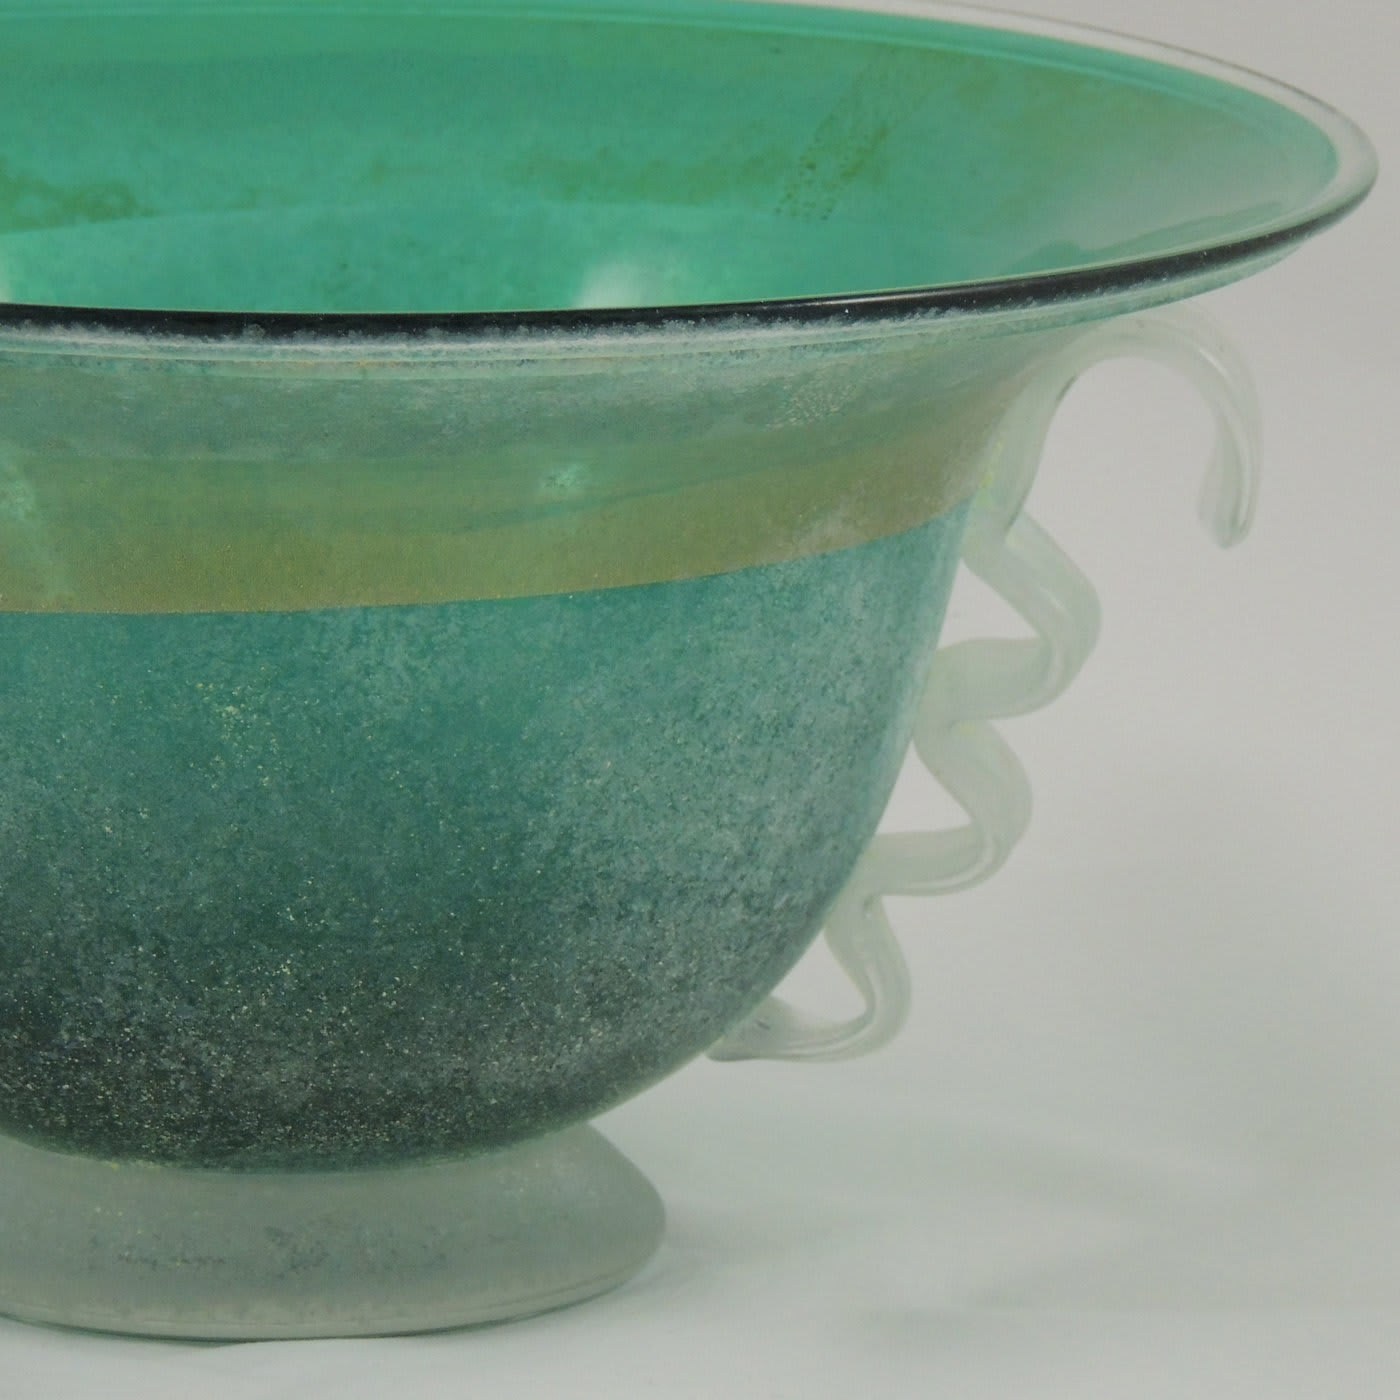 Green Bowl with Silver-Gold Leaf - Gambaro e Tagliapietra